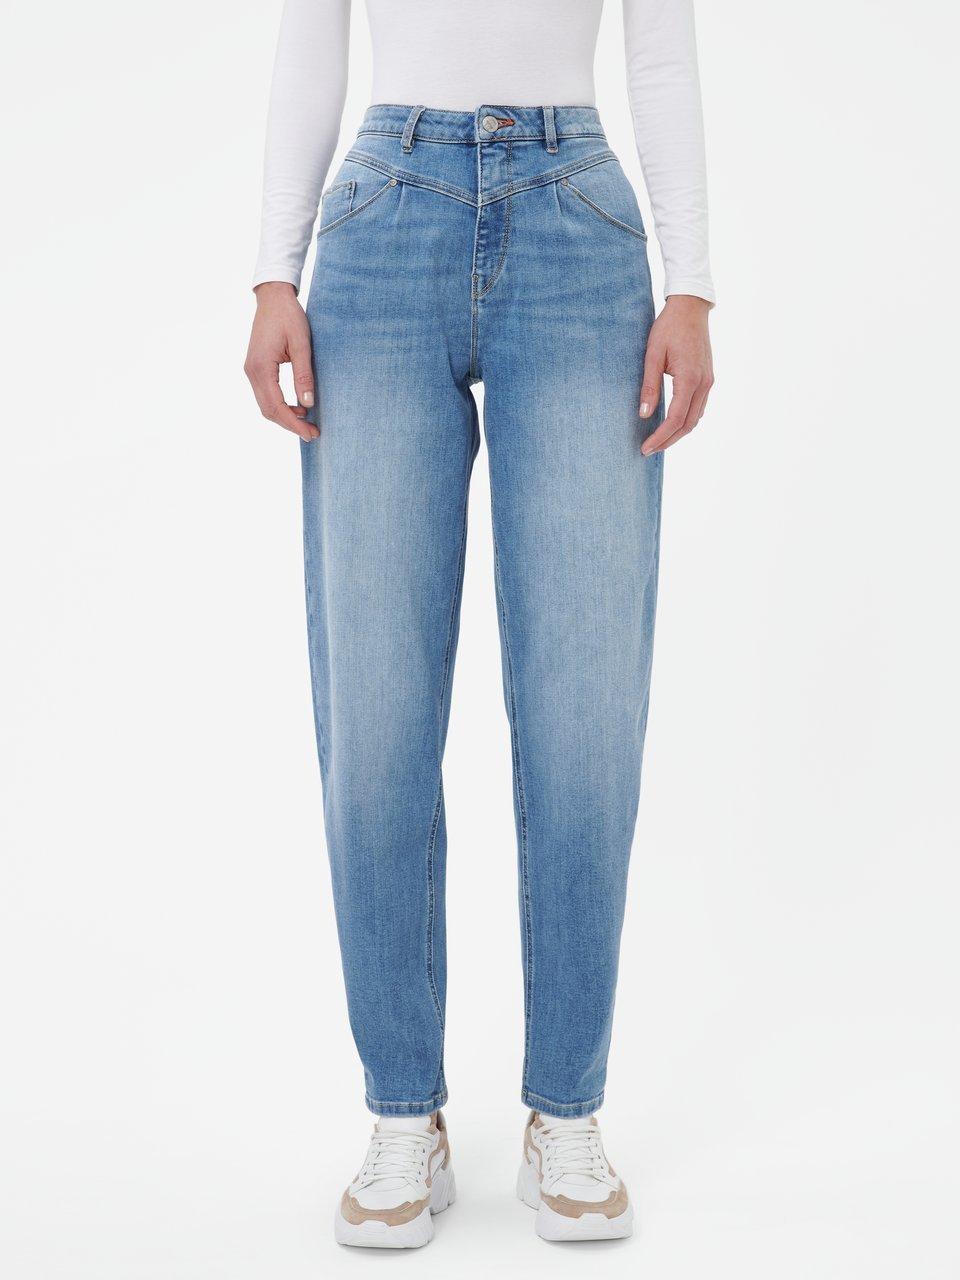 Five Fellas - Jeans "Olivia" in Inch-Länge 30